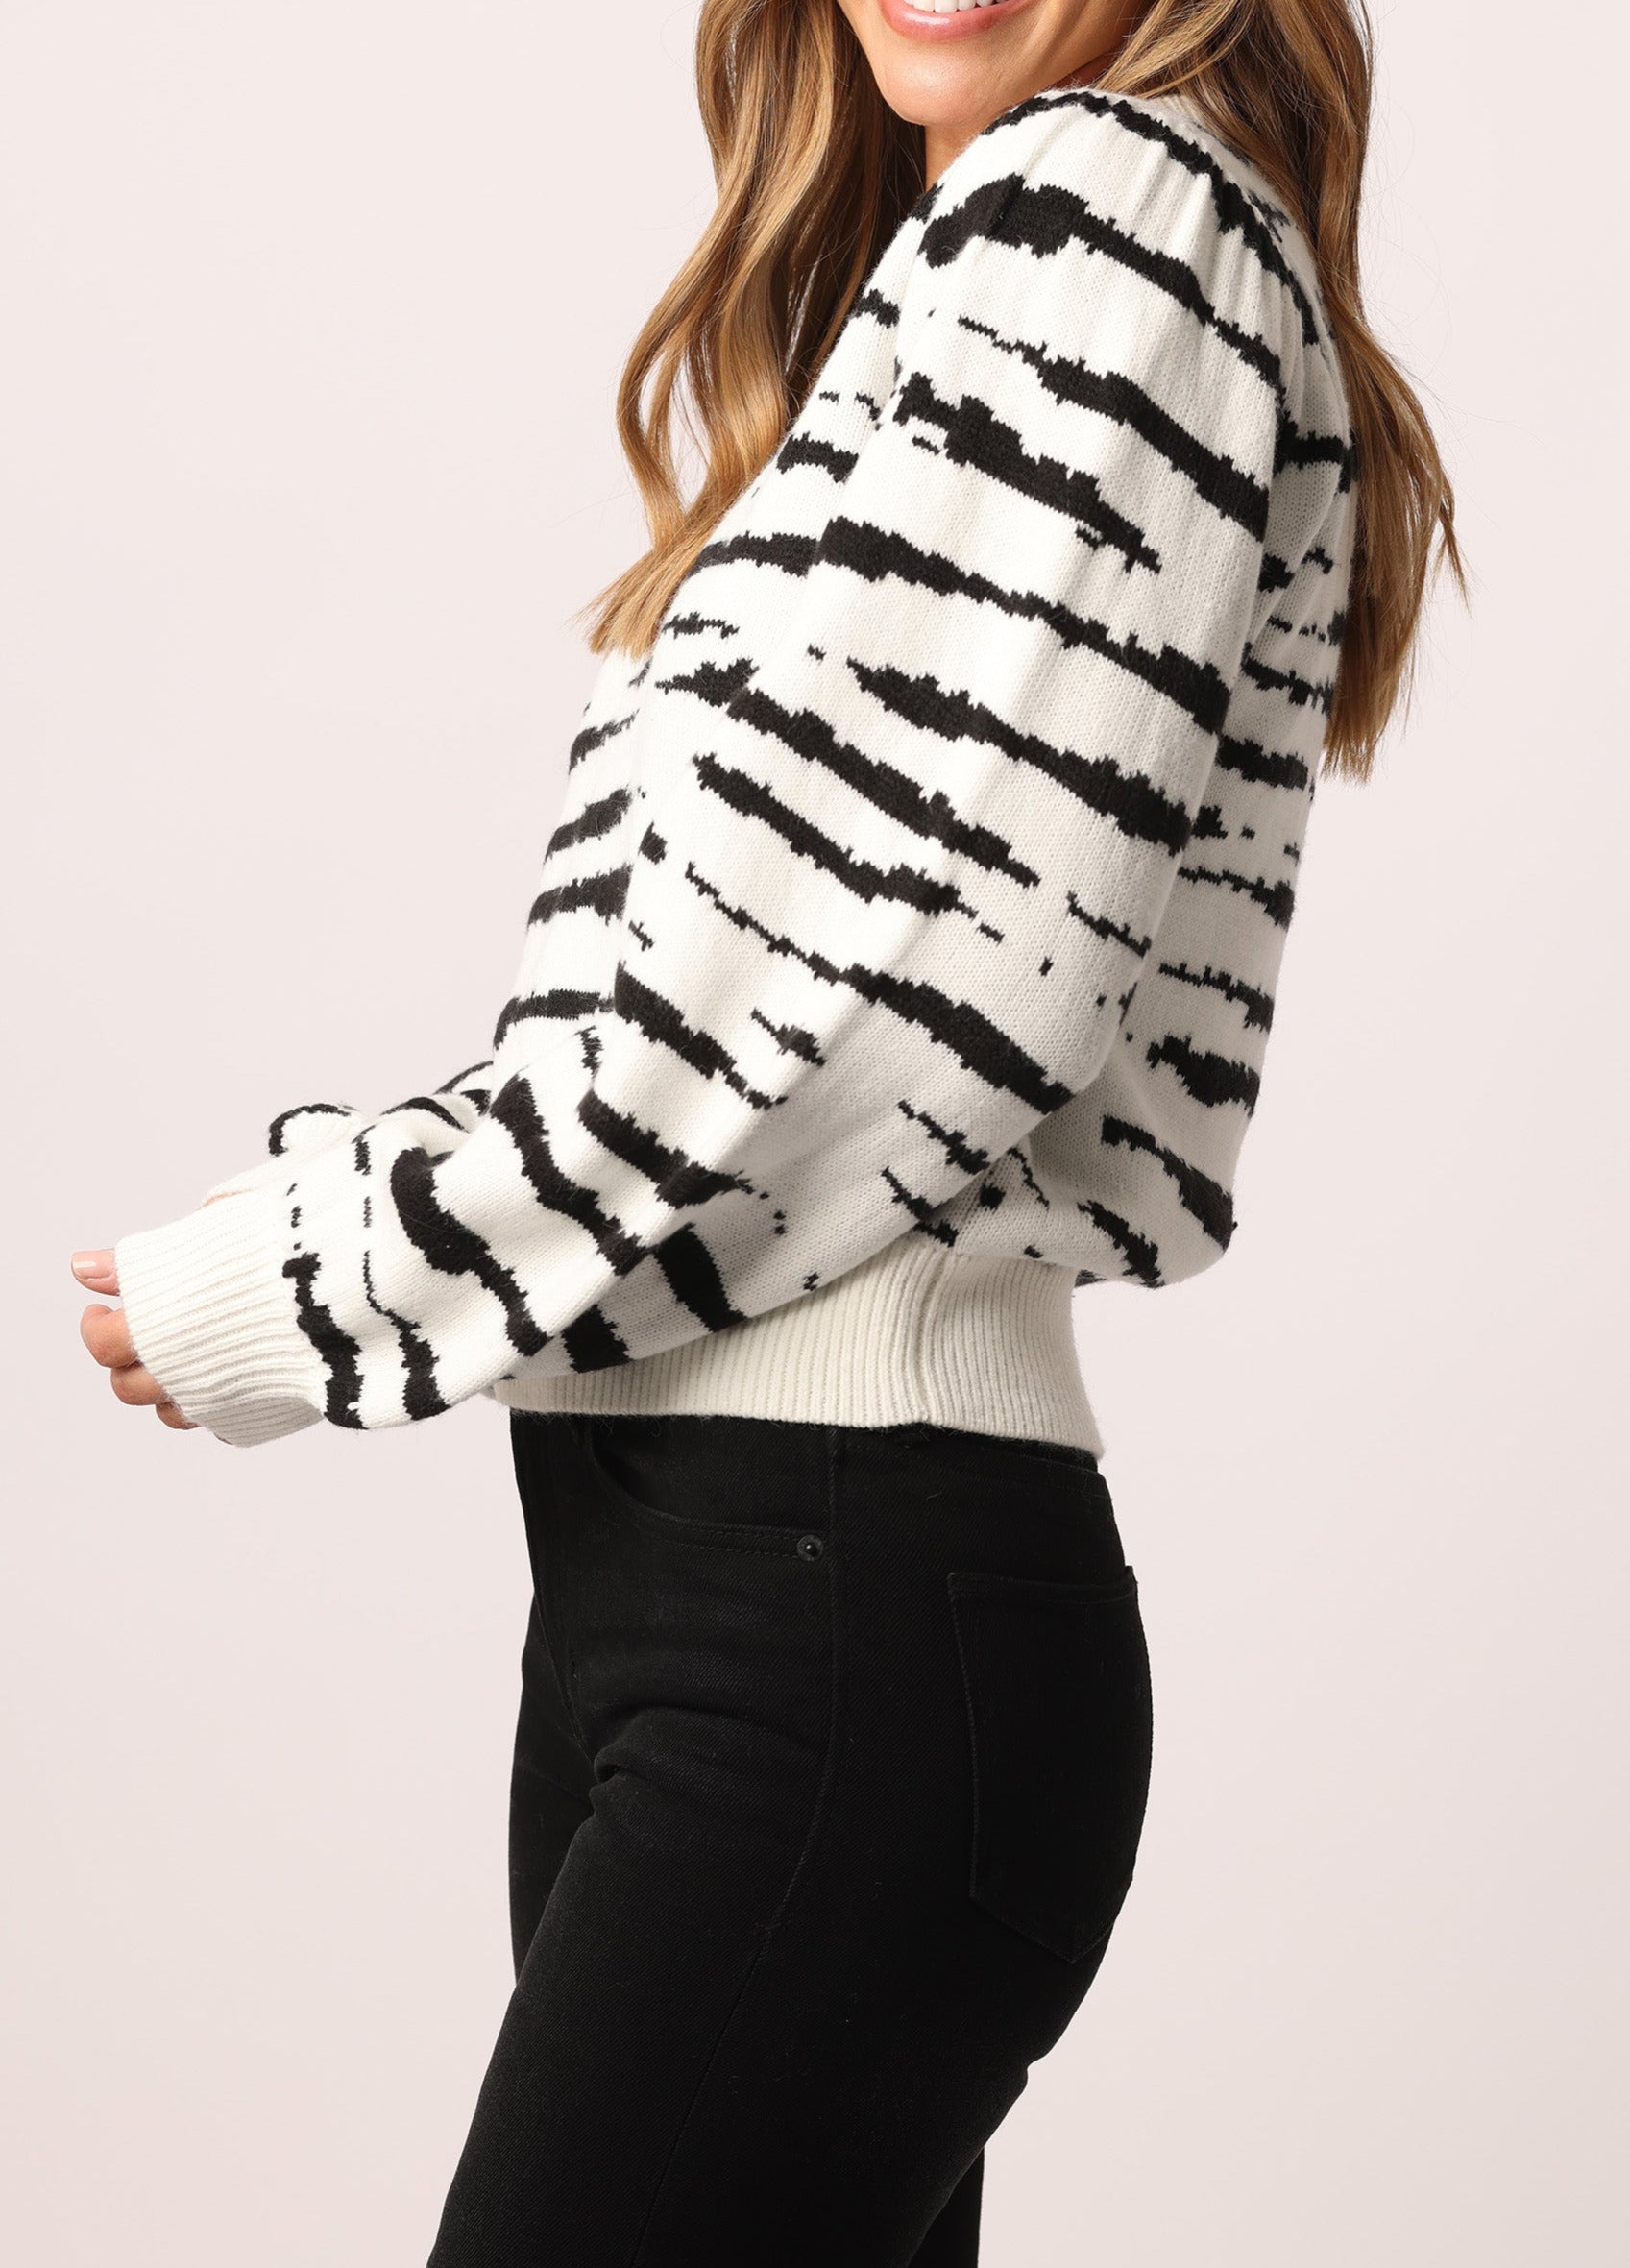 raelynn-bell-sleeve-sweater-black-&-white-zebra